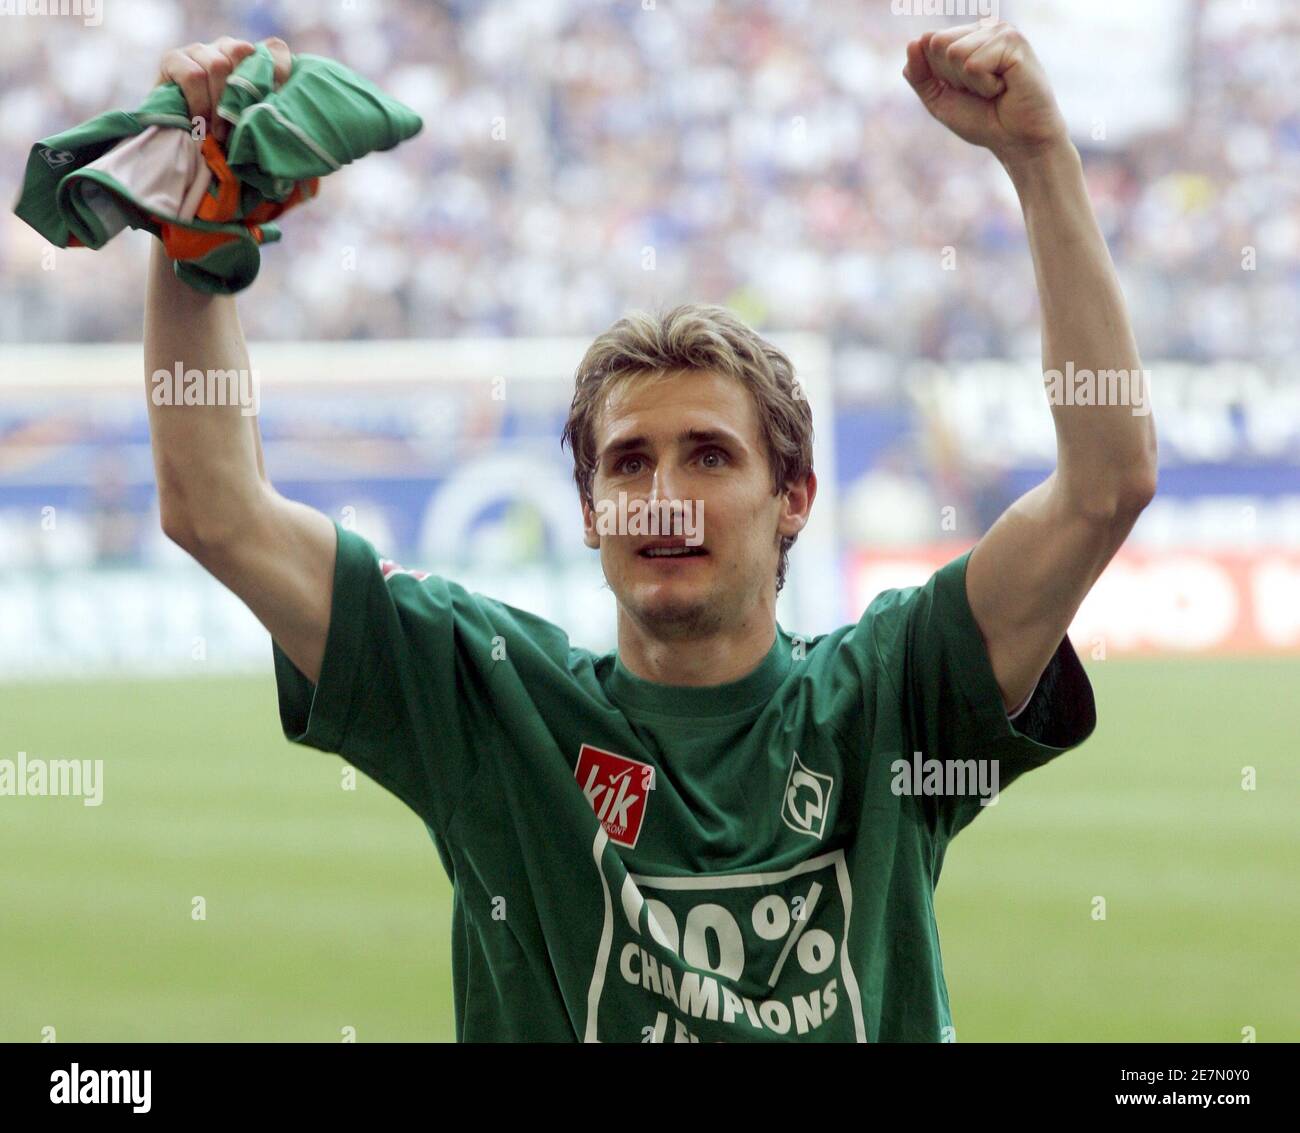 Miroslav Klose aus Werder Bremen trägt ein T-Shirt mit der Aufschrift "100  Prozent Champions League", nachdem sein Team den Hamburger SV am 13. Mai  2006 beim letzten Bundesliga-Fußballspiel in Hamburg um 2-1